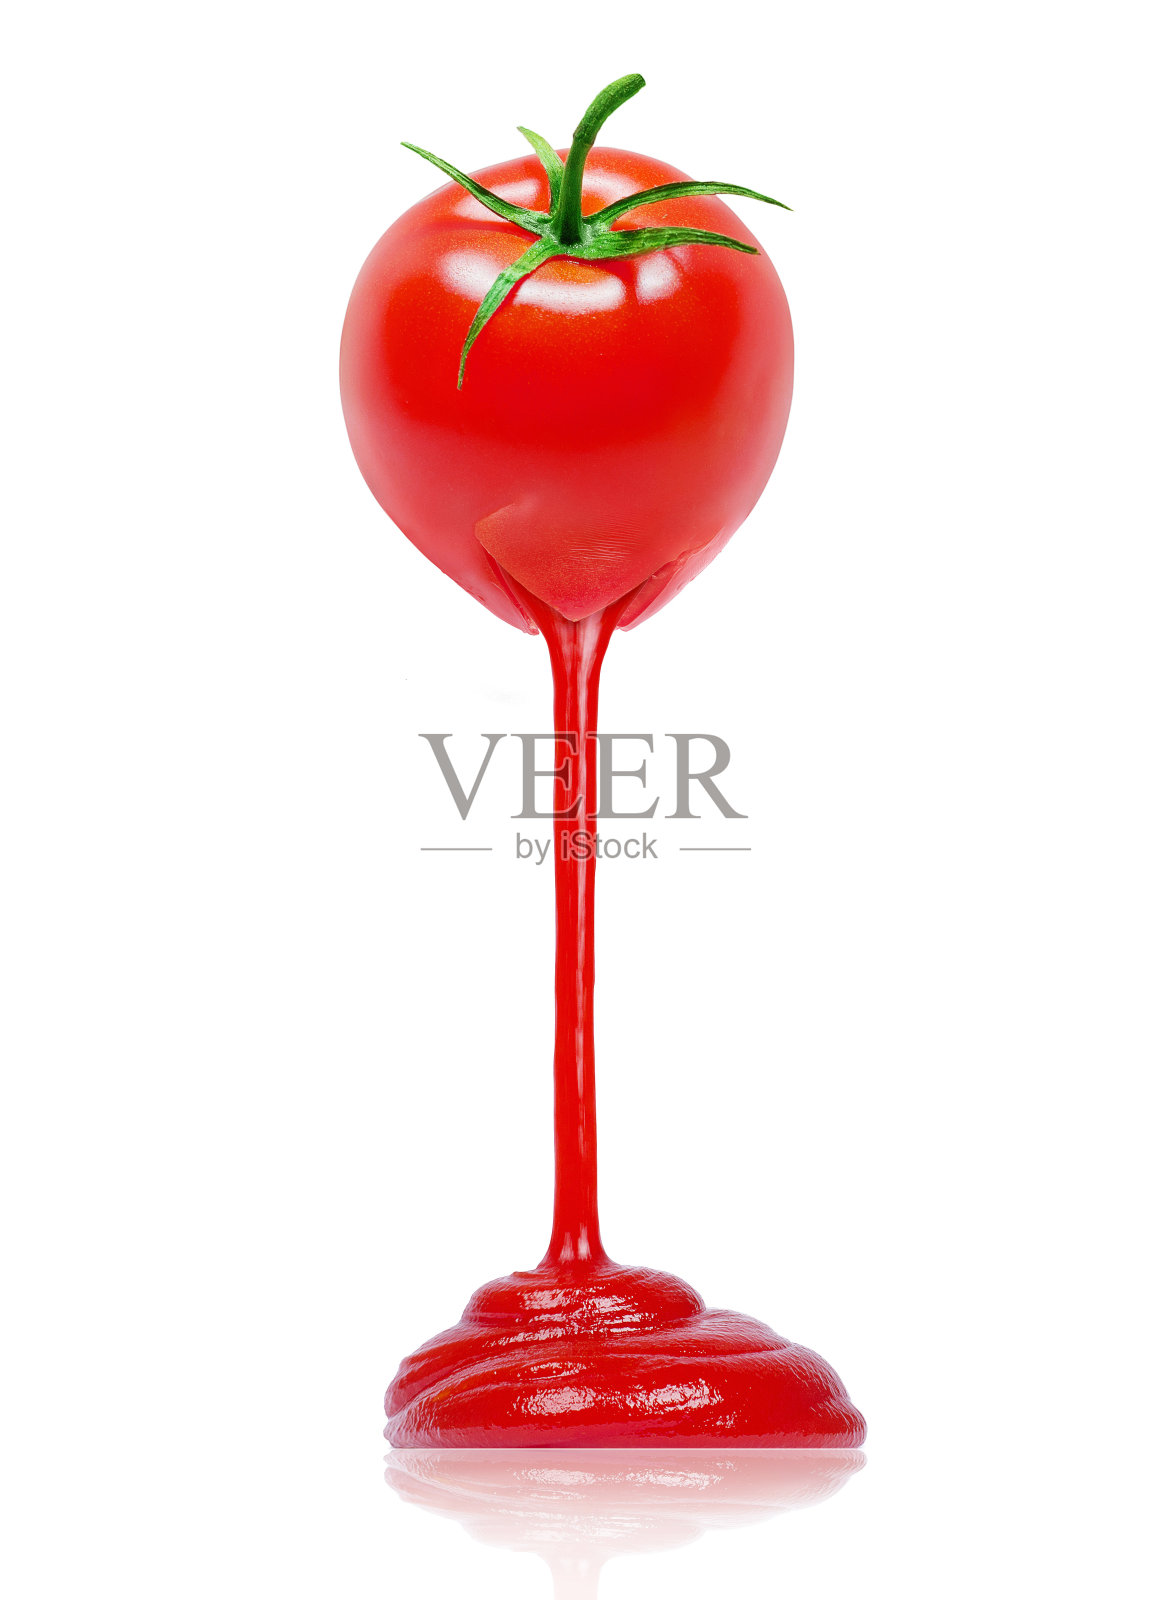 番茄酱从新鲜的番茄中流出来。白色背景上的番茄概念构图照片摄影图片